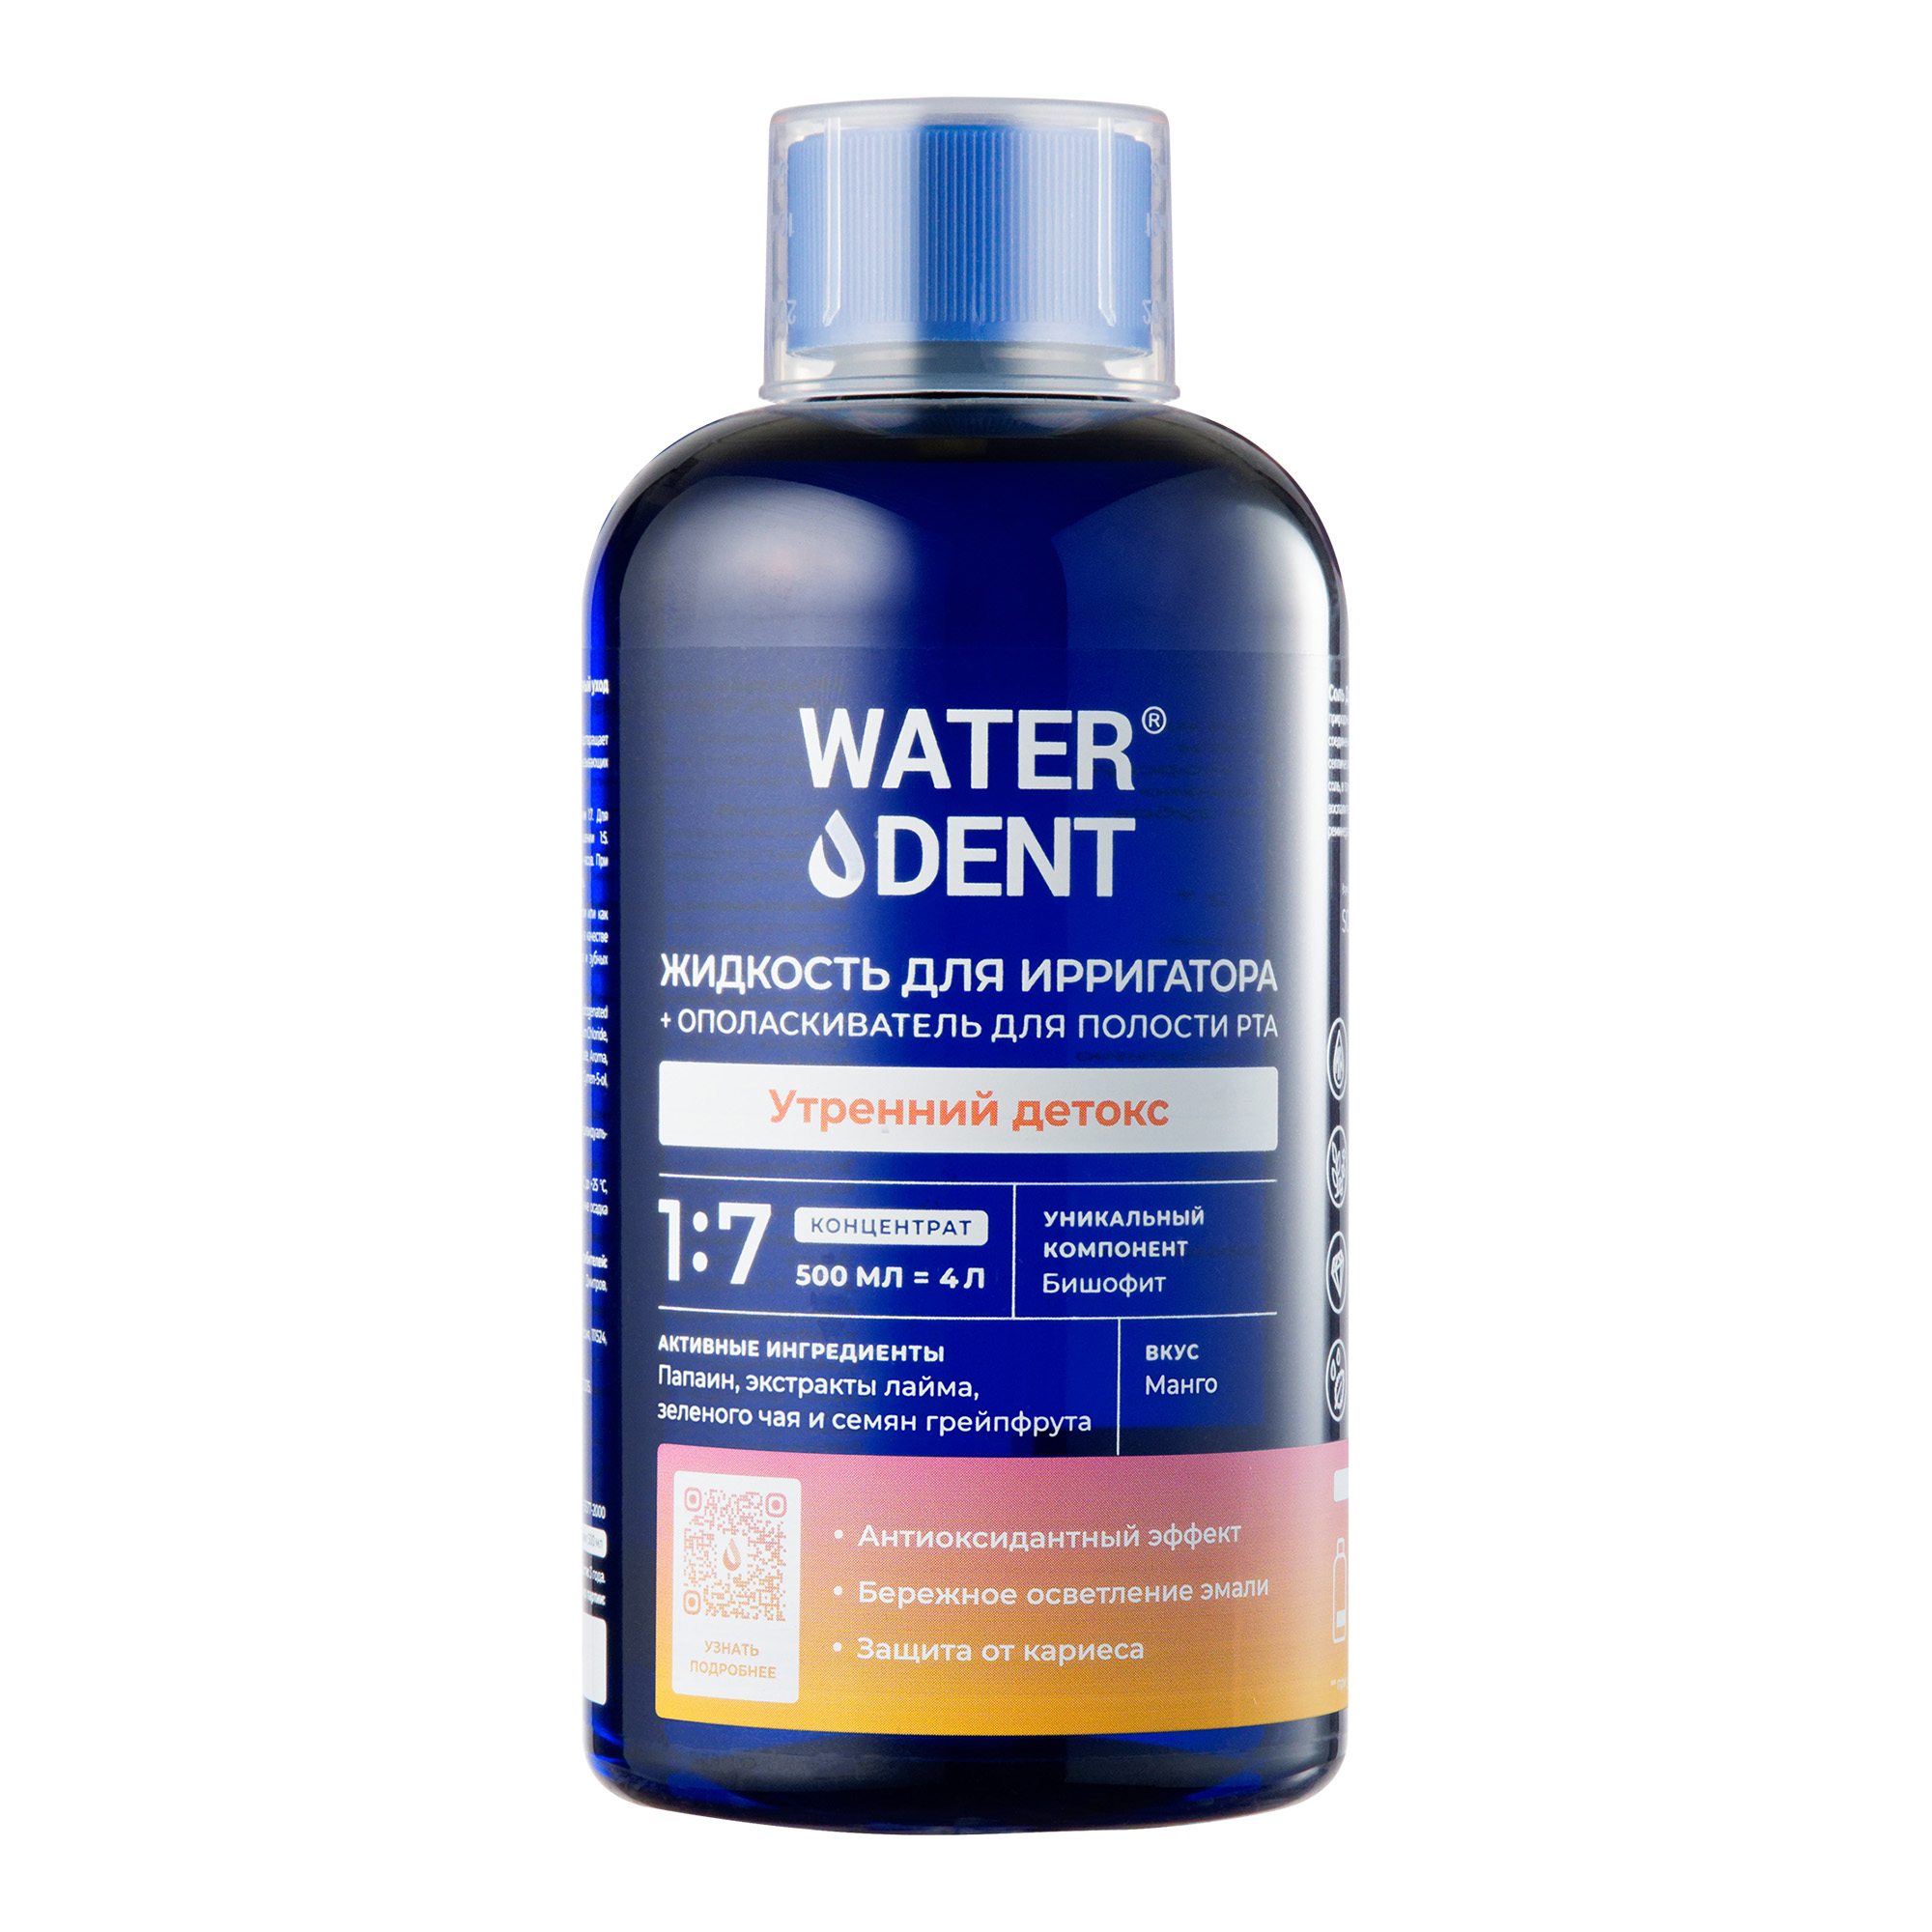 Waterdent, жидкость для ирригатора Утренний детокс Манго, флакон 500 мл waterdent жидкость для ирригатора отбеливающая 500 мл